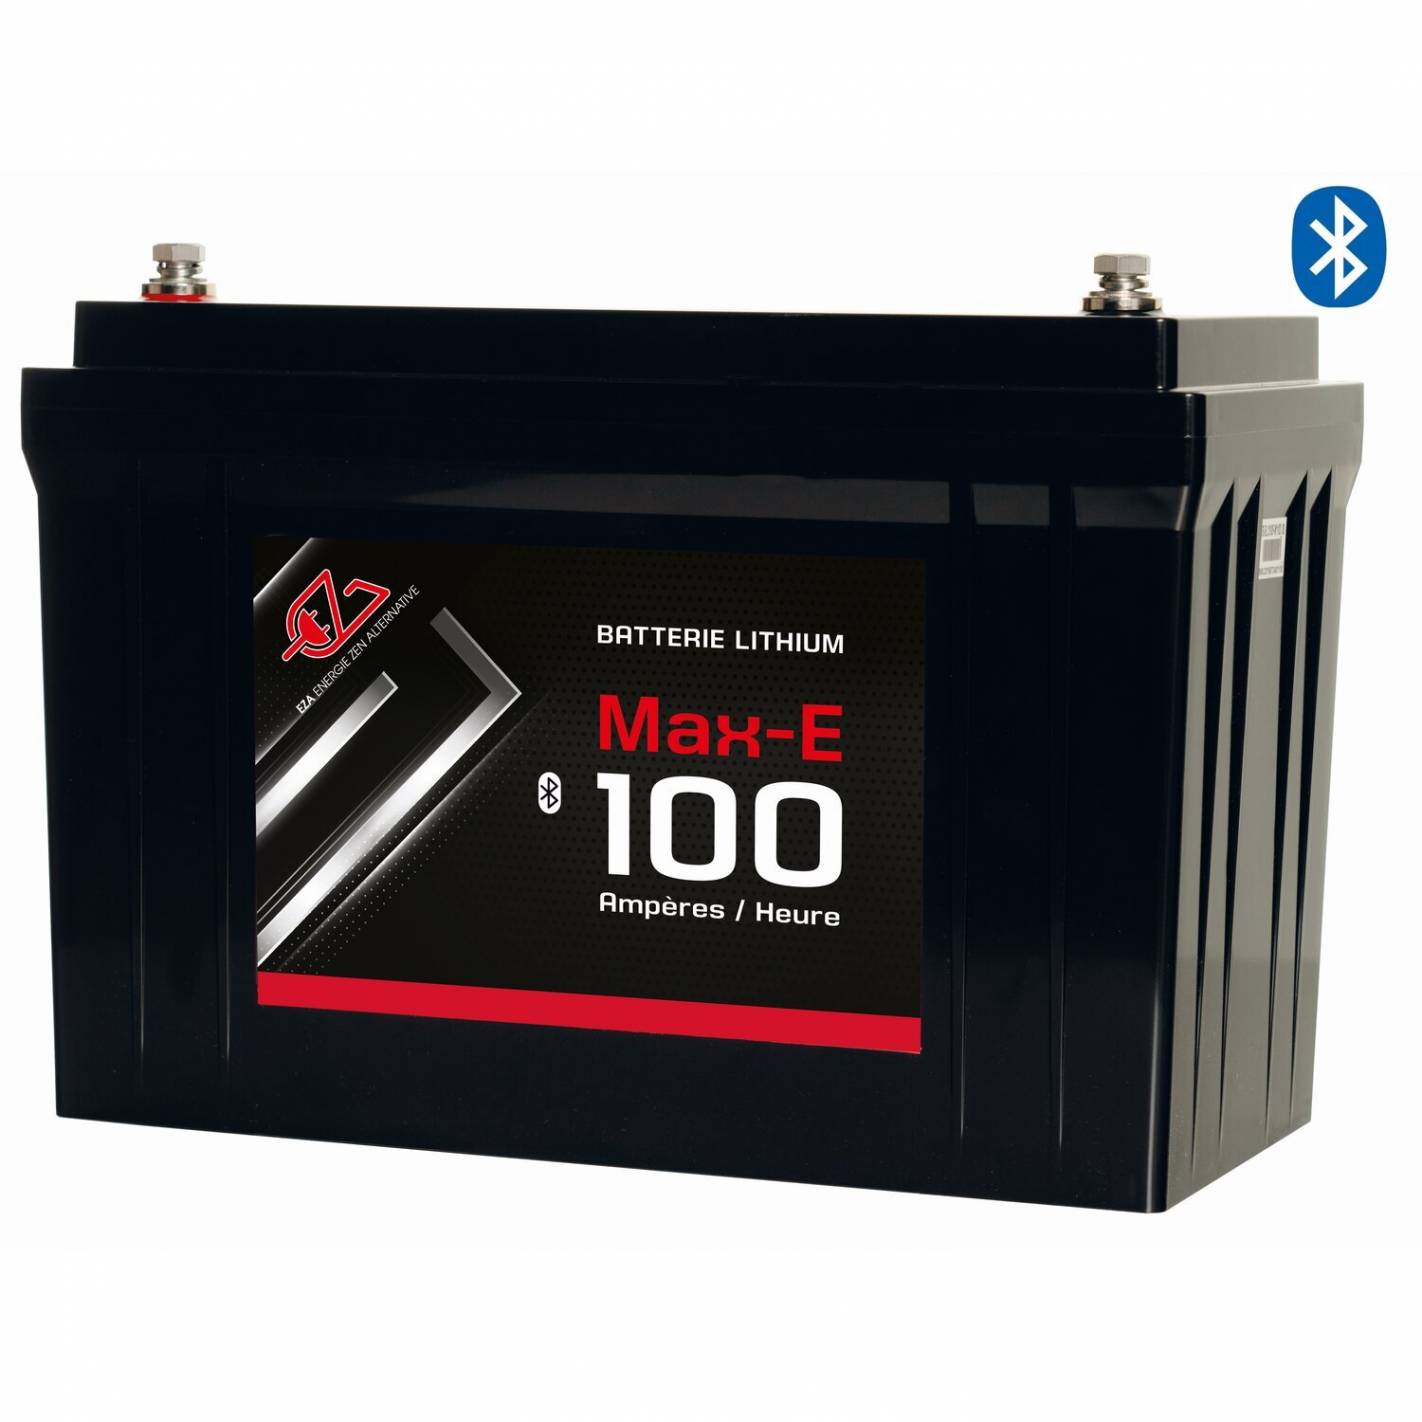 Batterie Lithium Max-E spécial camping-car Eza RG-5Q7053